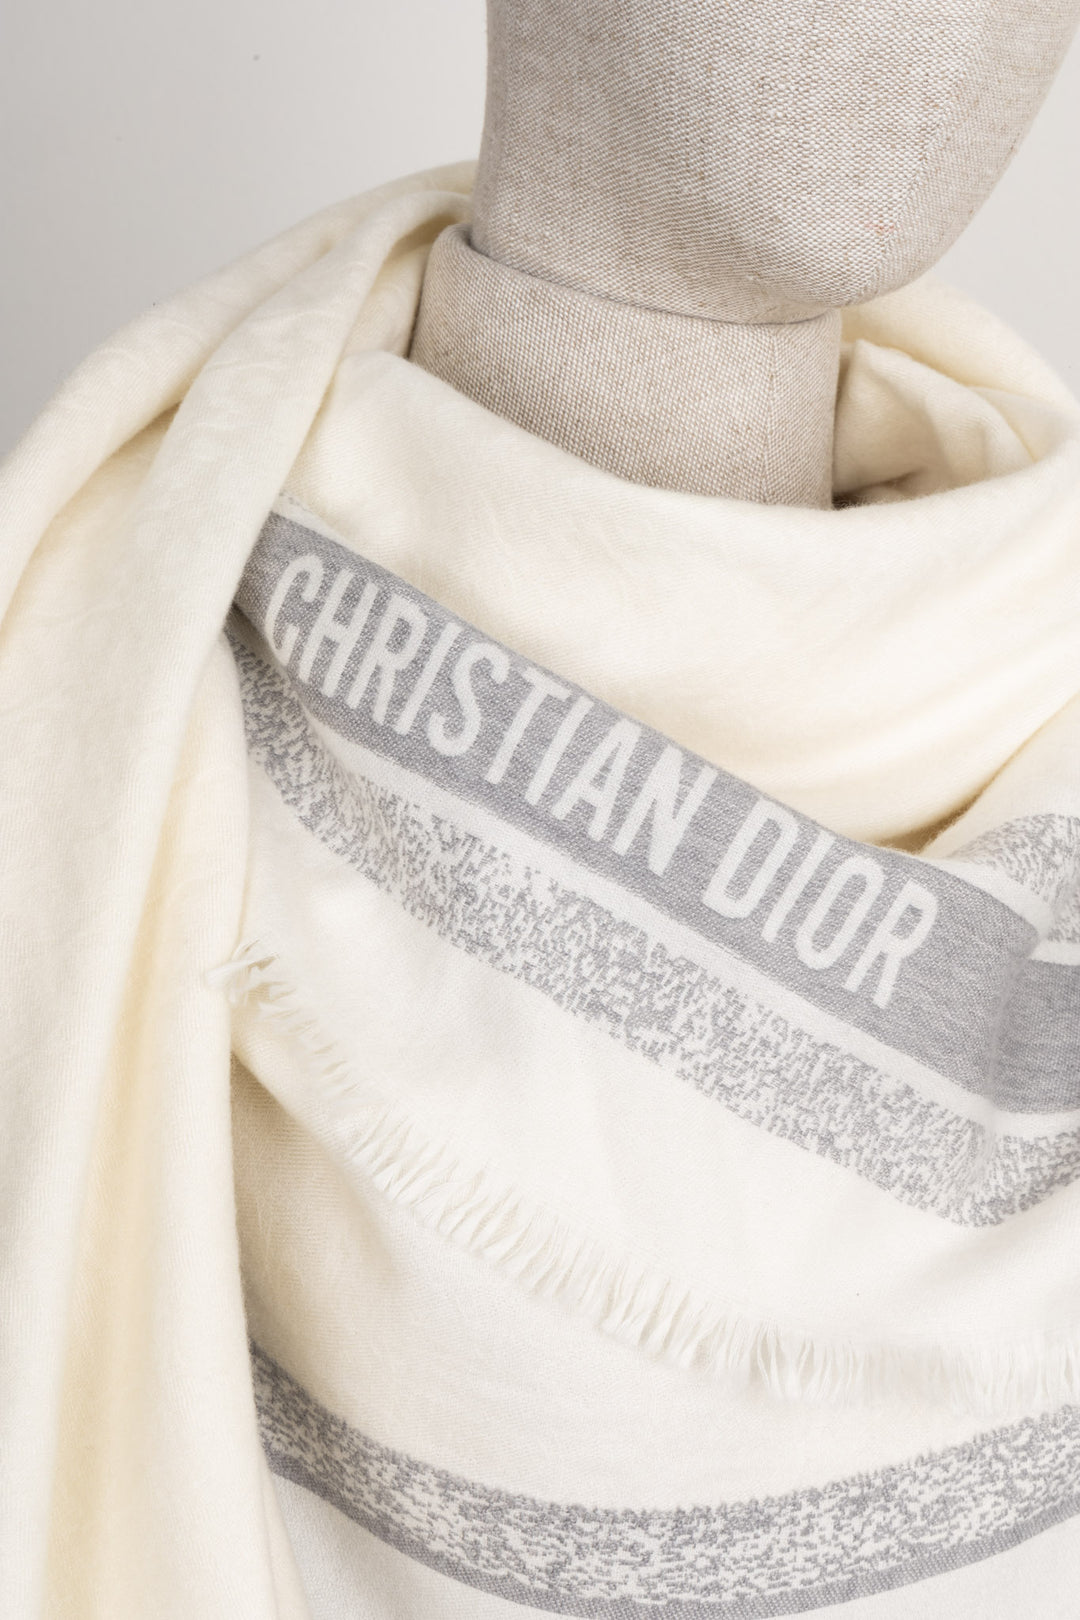 CHRISTIAN DIOR Logo Cashmere Scarf Ivory